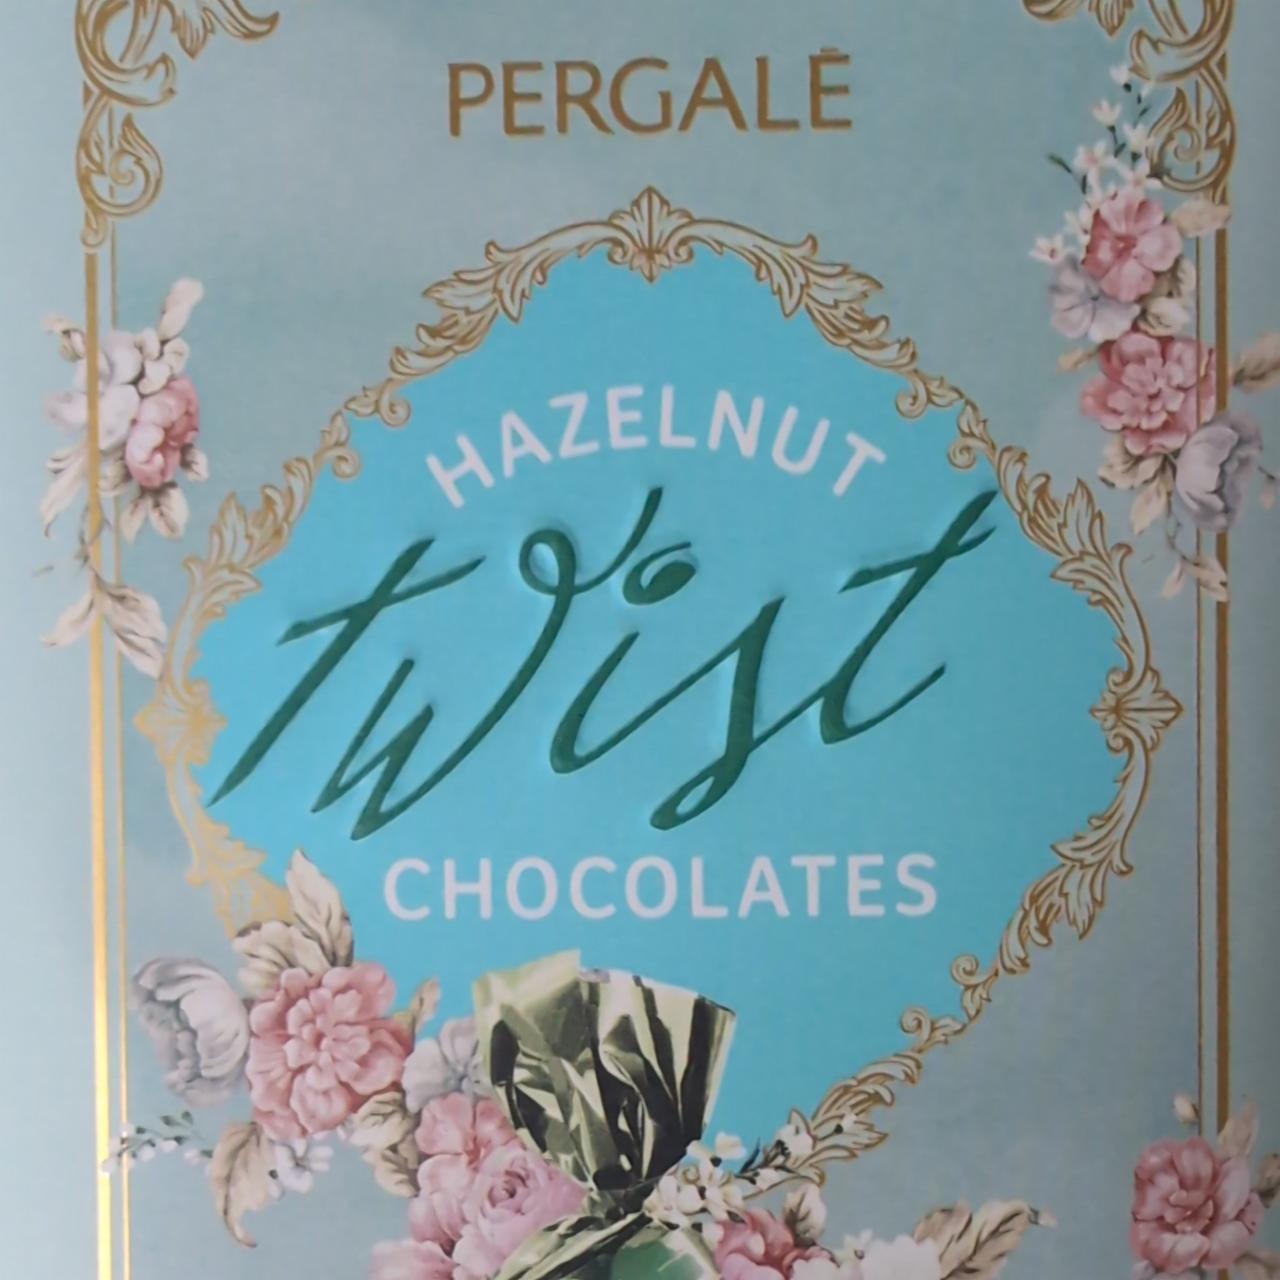 Fotografie - Hazelnut Twist Chocolates Pergale